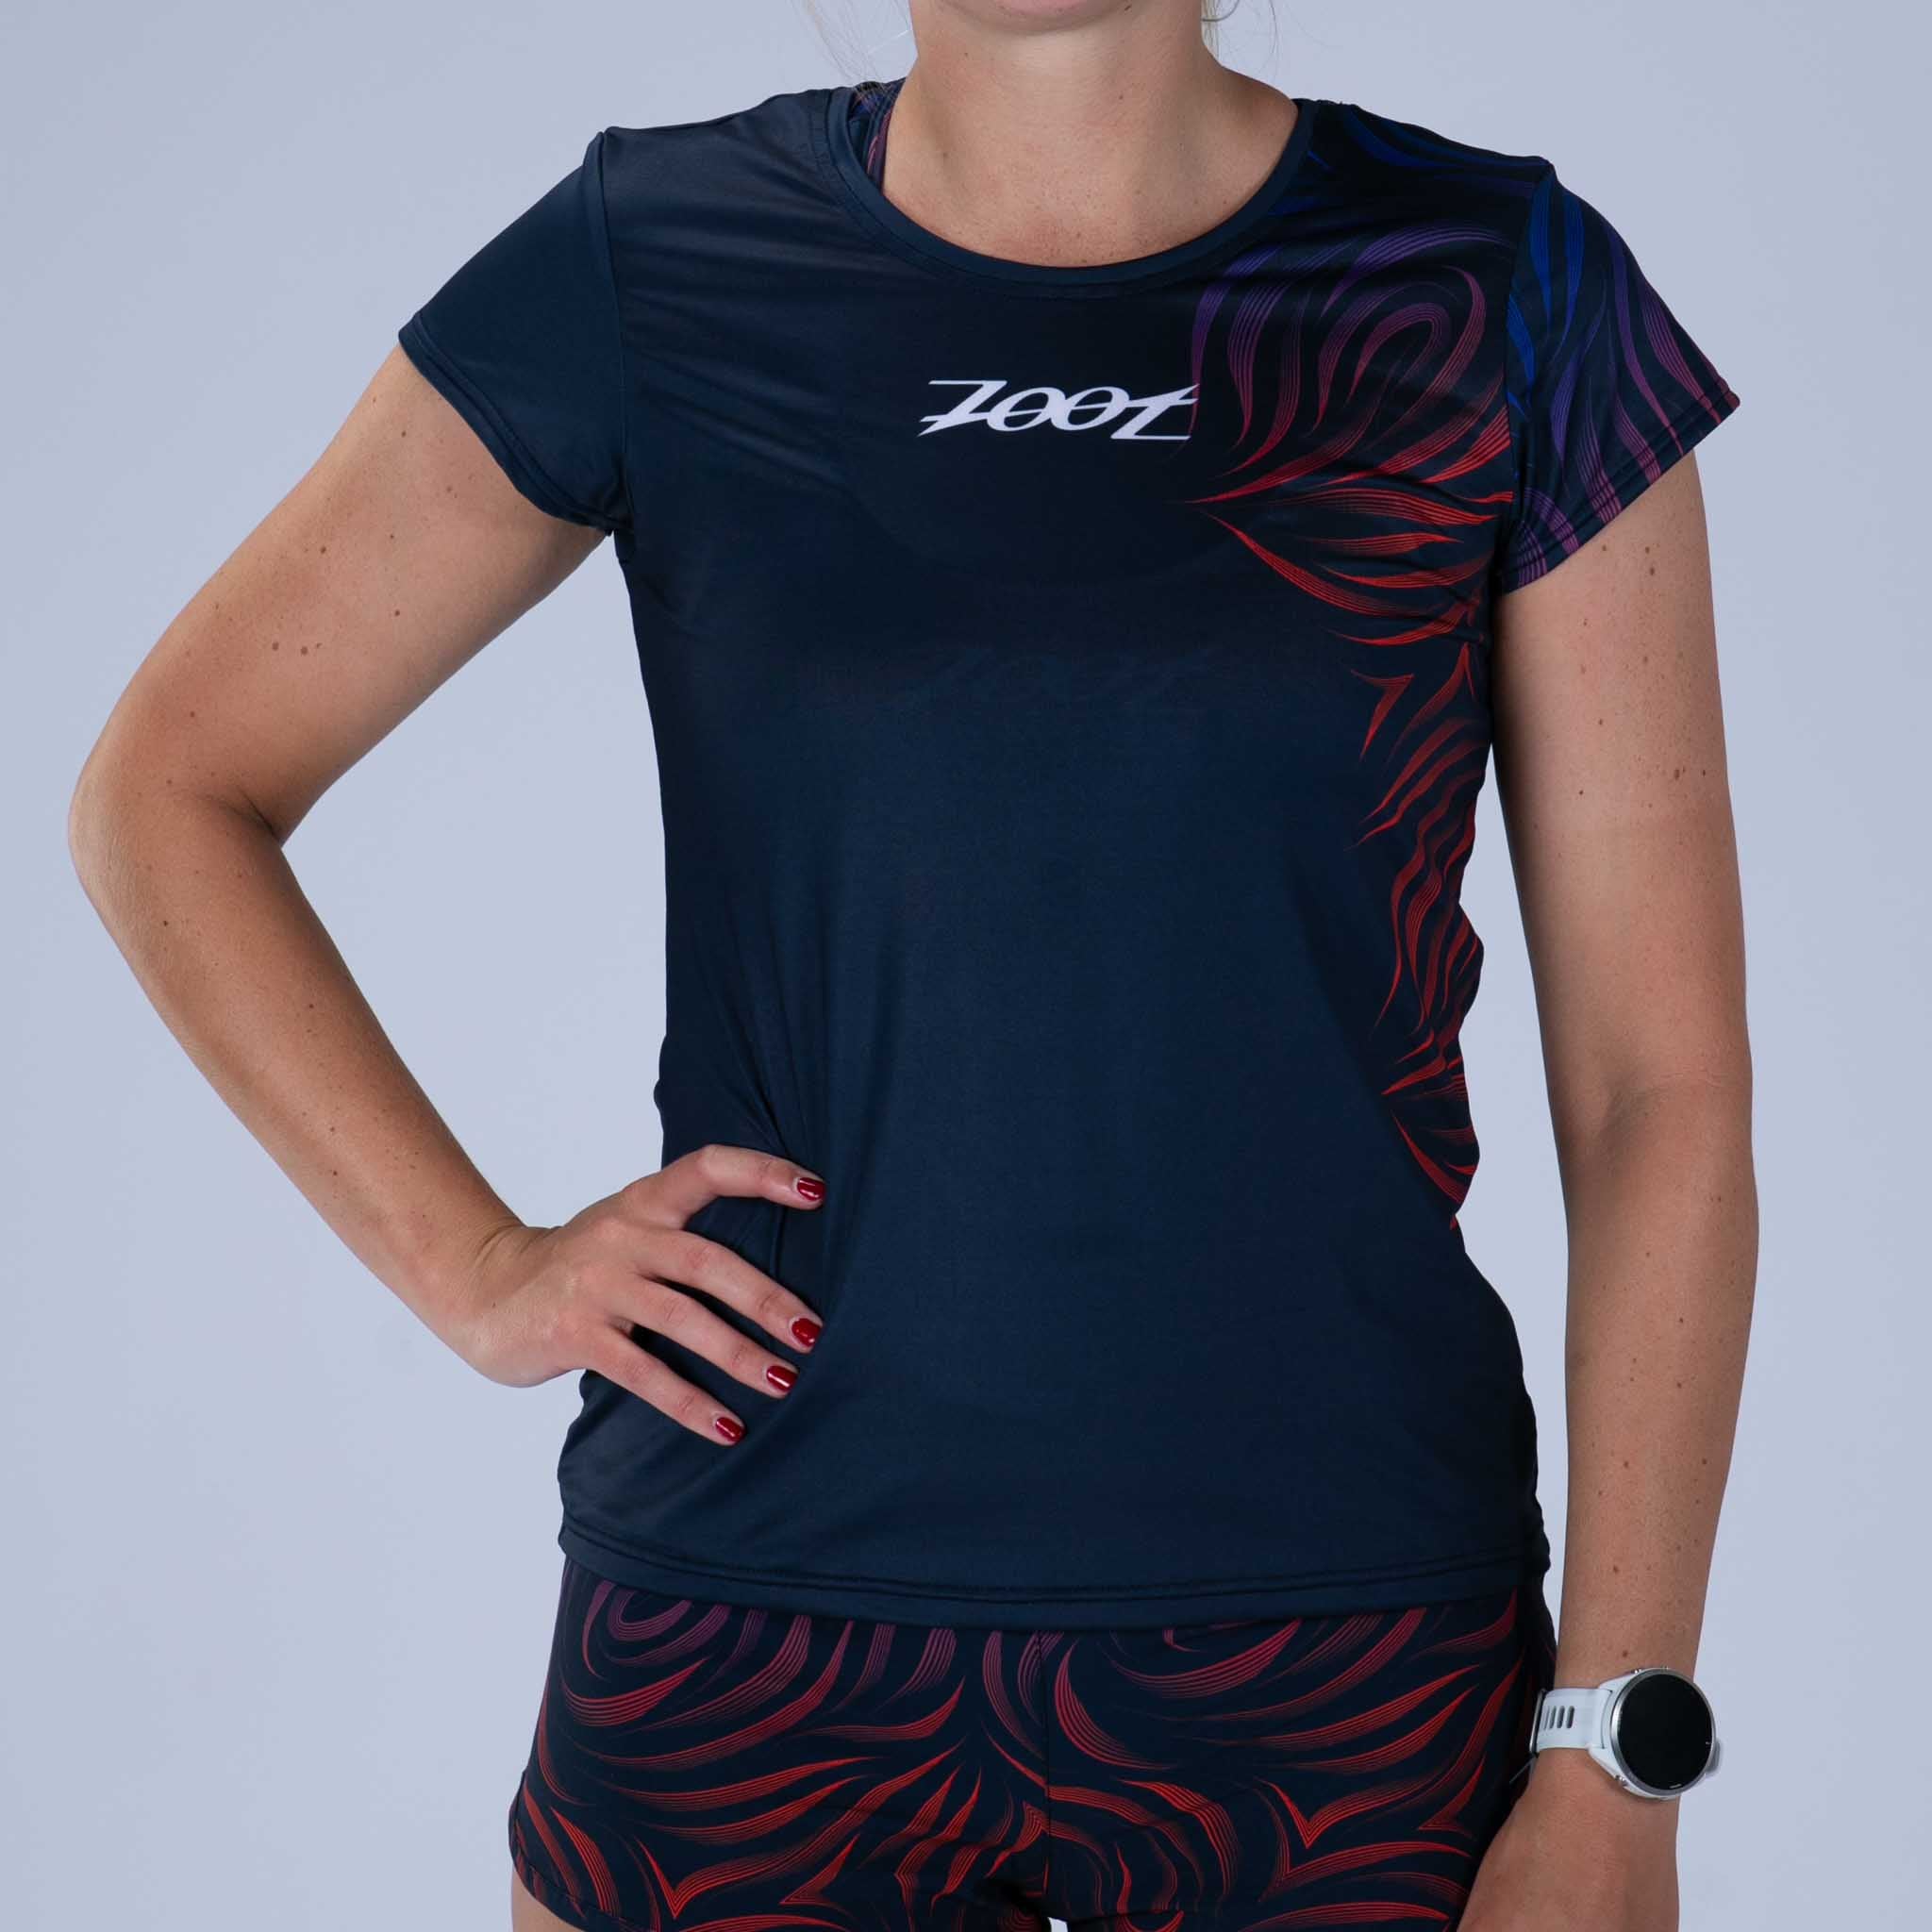 Zoot Sports RUN TEE Women's Ltd Run Tee - Phoenix